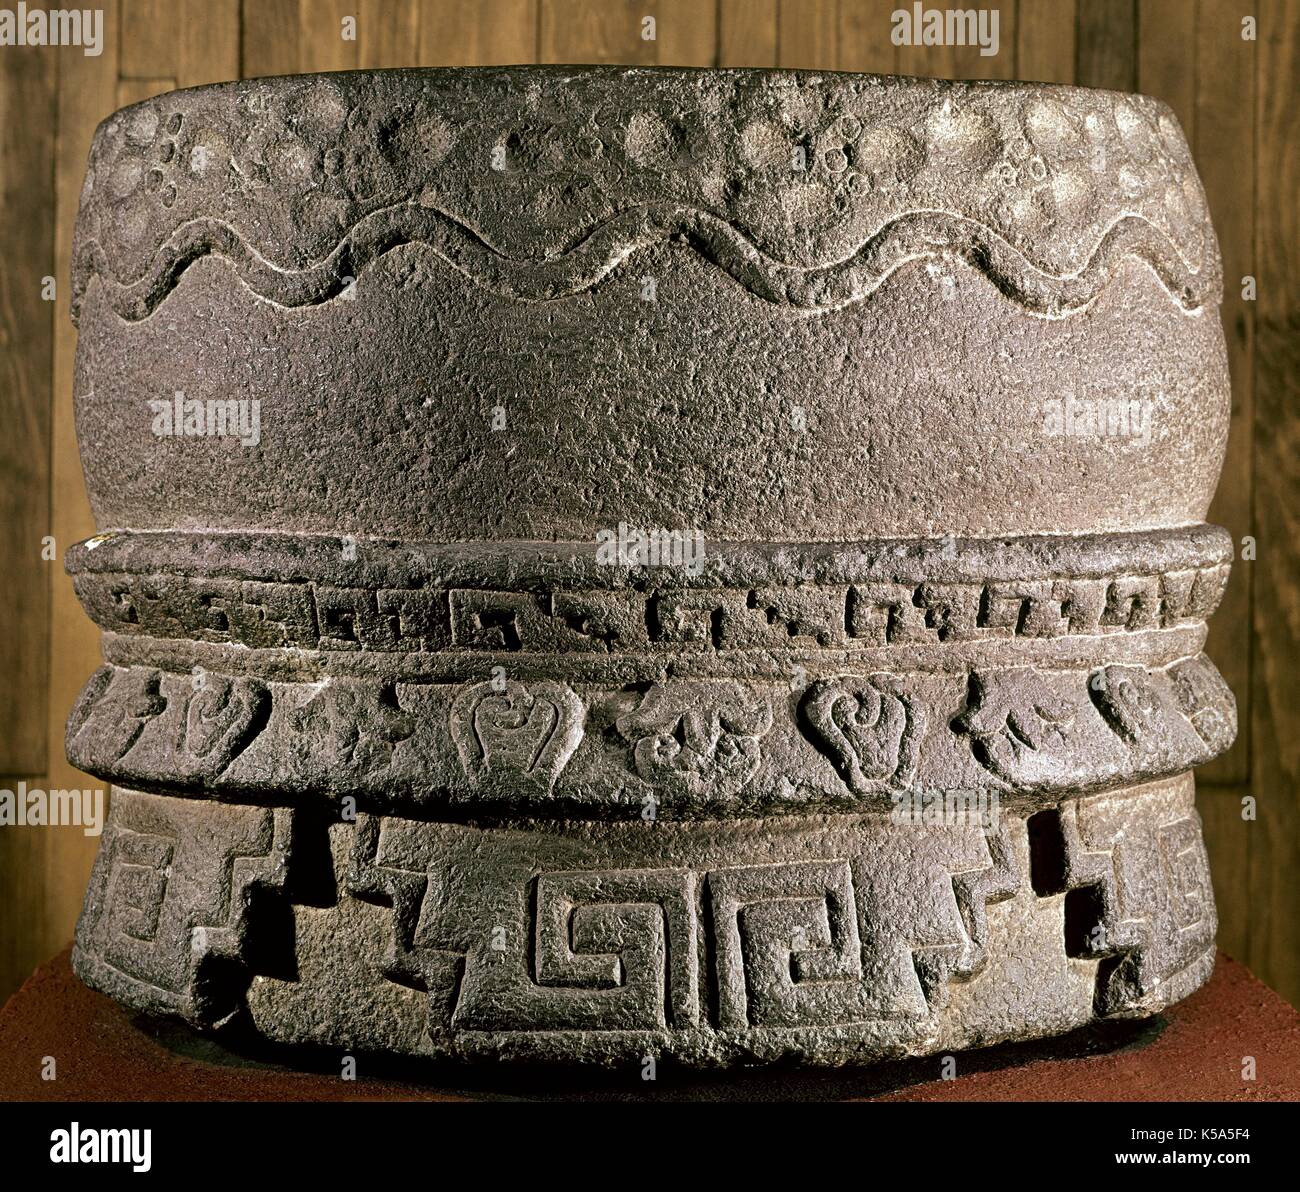 Prä Zeitraum. Aztec. Huehuetl. Representacion in Stein von einer aztekischen Drum gemacht. Aus Mexiko DF. Das Museum für Anthropologie in Mexiko. Stockfoto